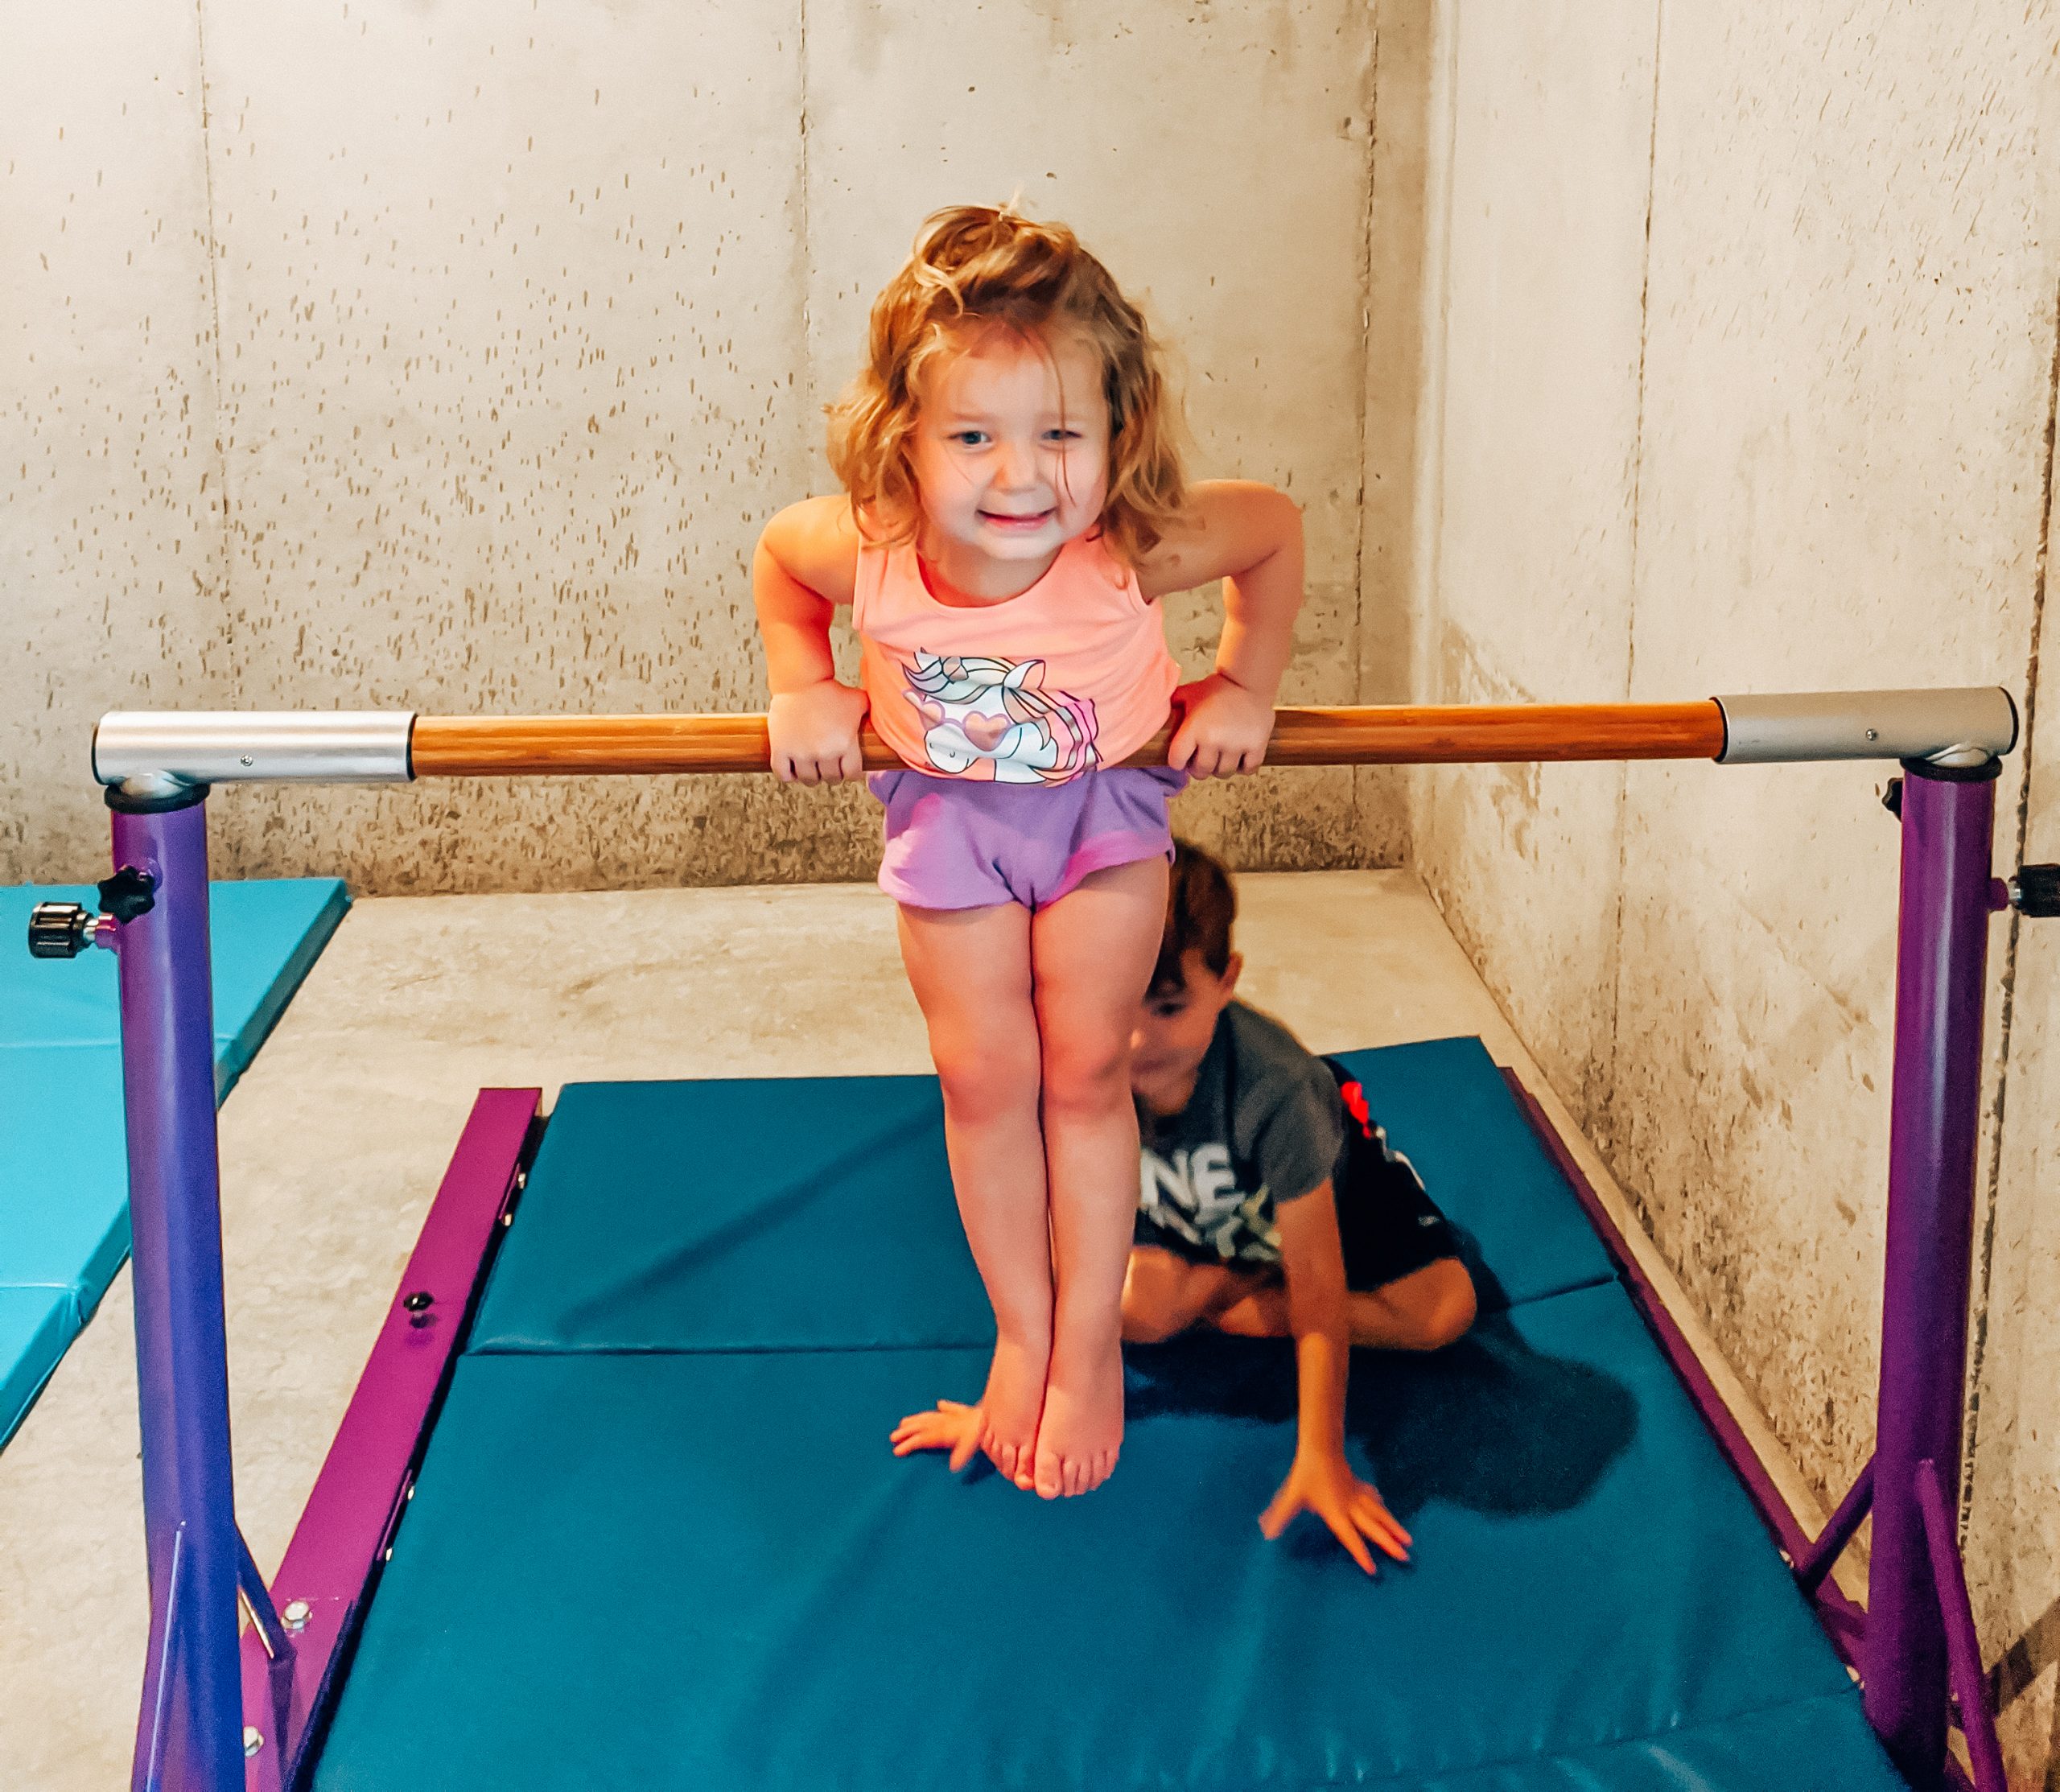 Best Gymnastics Equipment for Home - Our Home Gymnastics Setup • COVET by  tricia